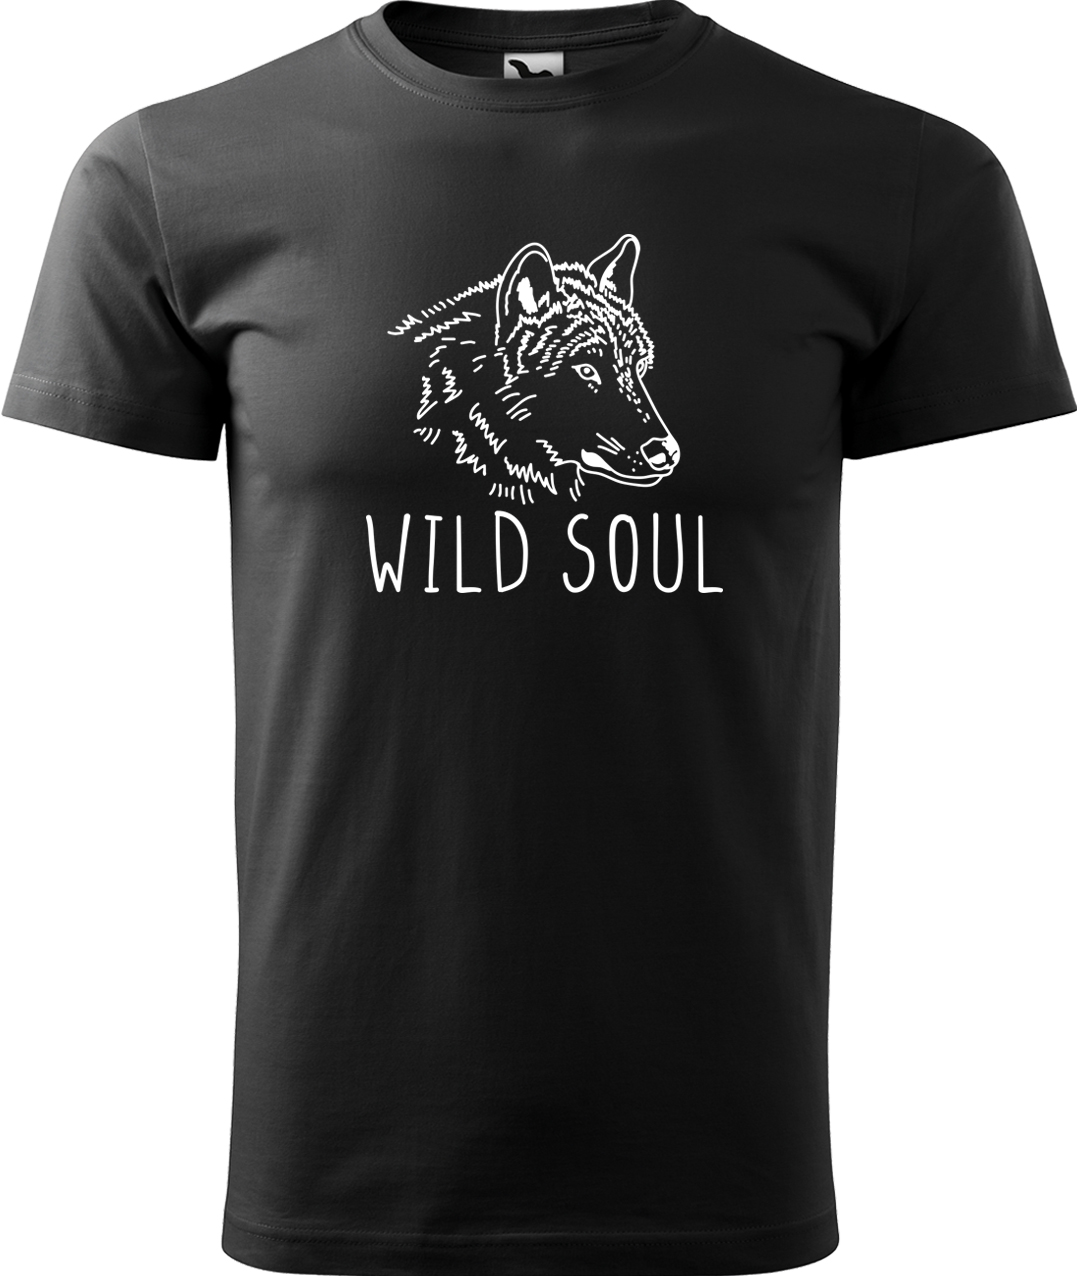 Pánské tričko s vlkem - Wild soul Velikost: S, Barva: Černá (01), Střih: pánský